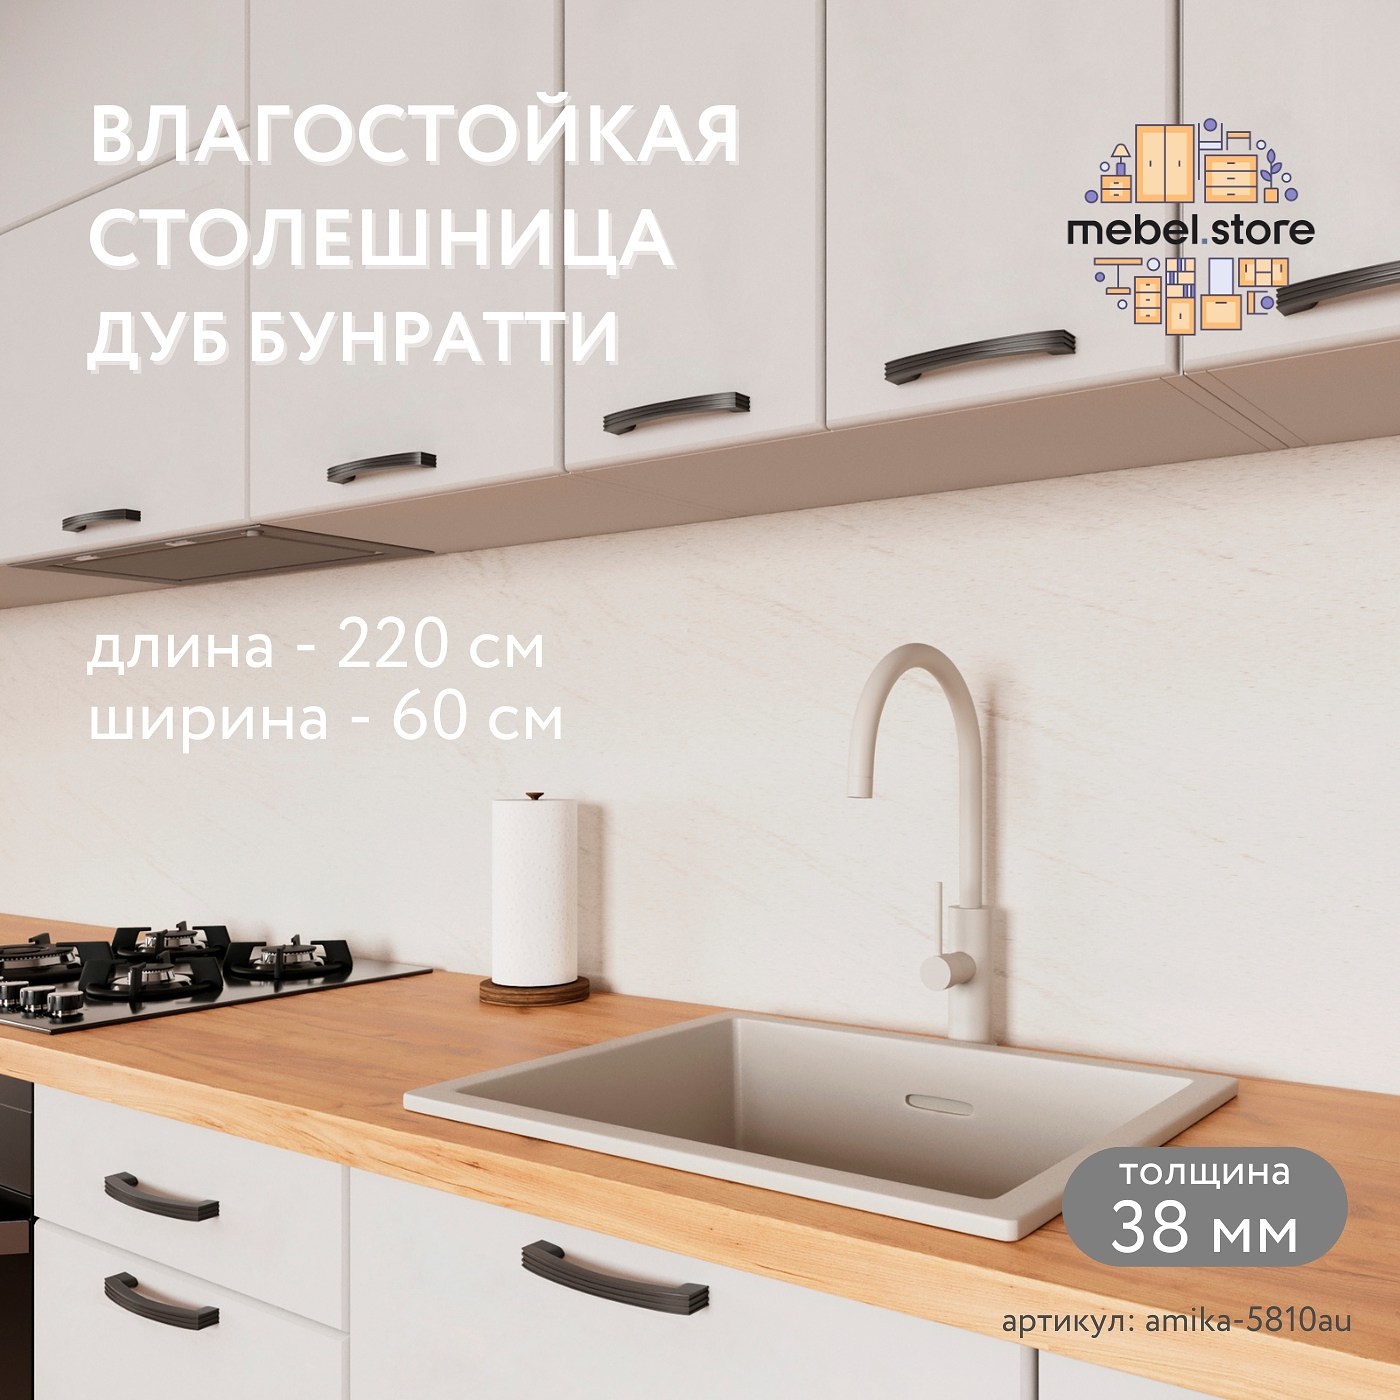 Столешница Амика-5810au минимализм для кухни - фото 1 large